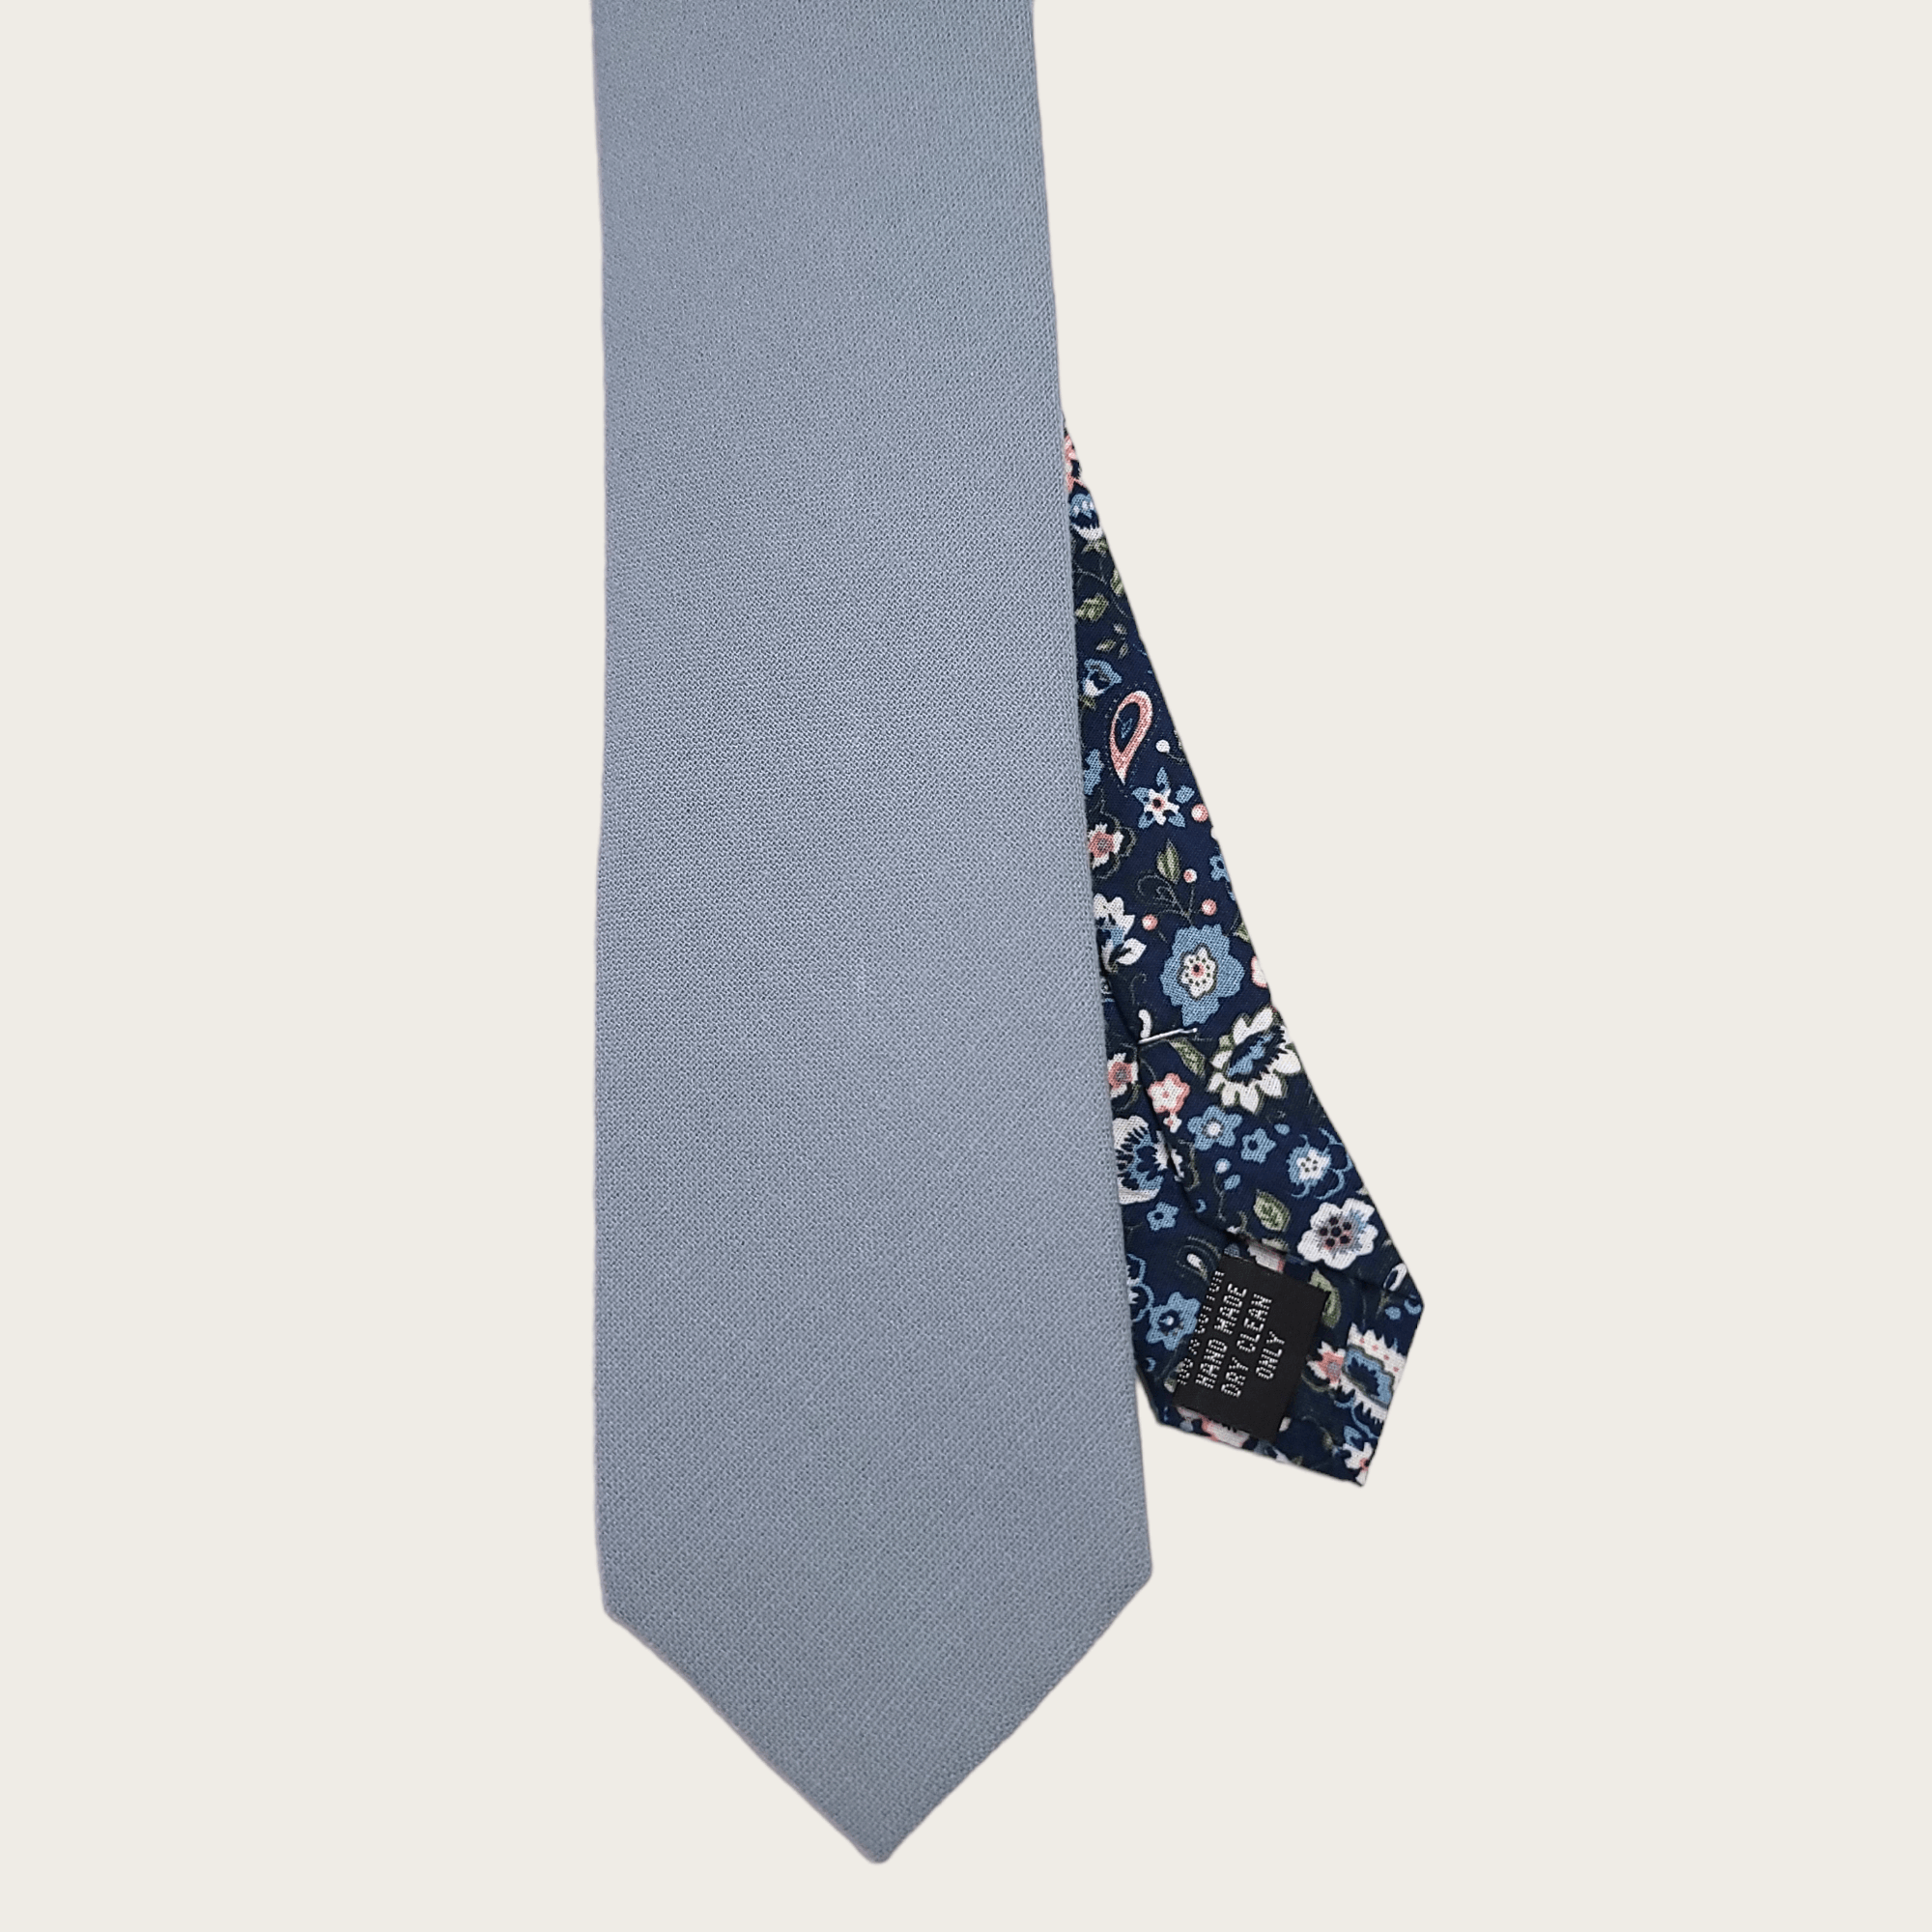 Slate Gray Navy Blue Floral Peekaboo Tie - STYLETIE